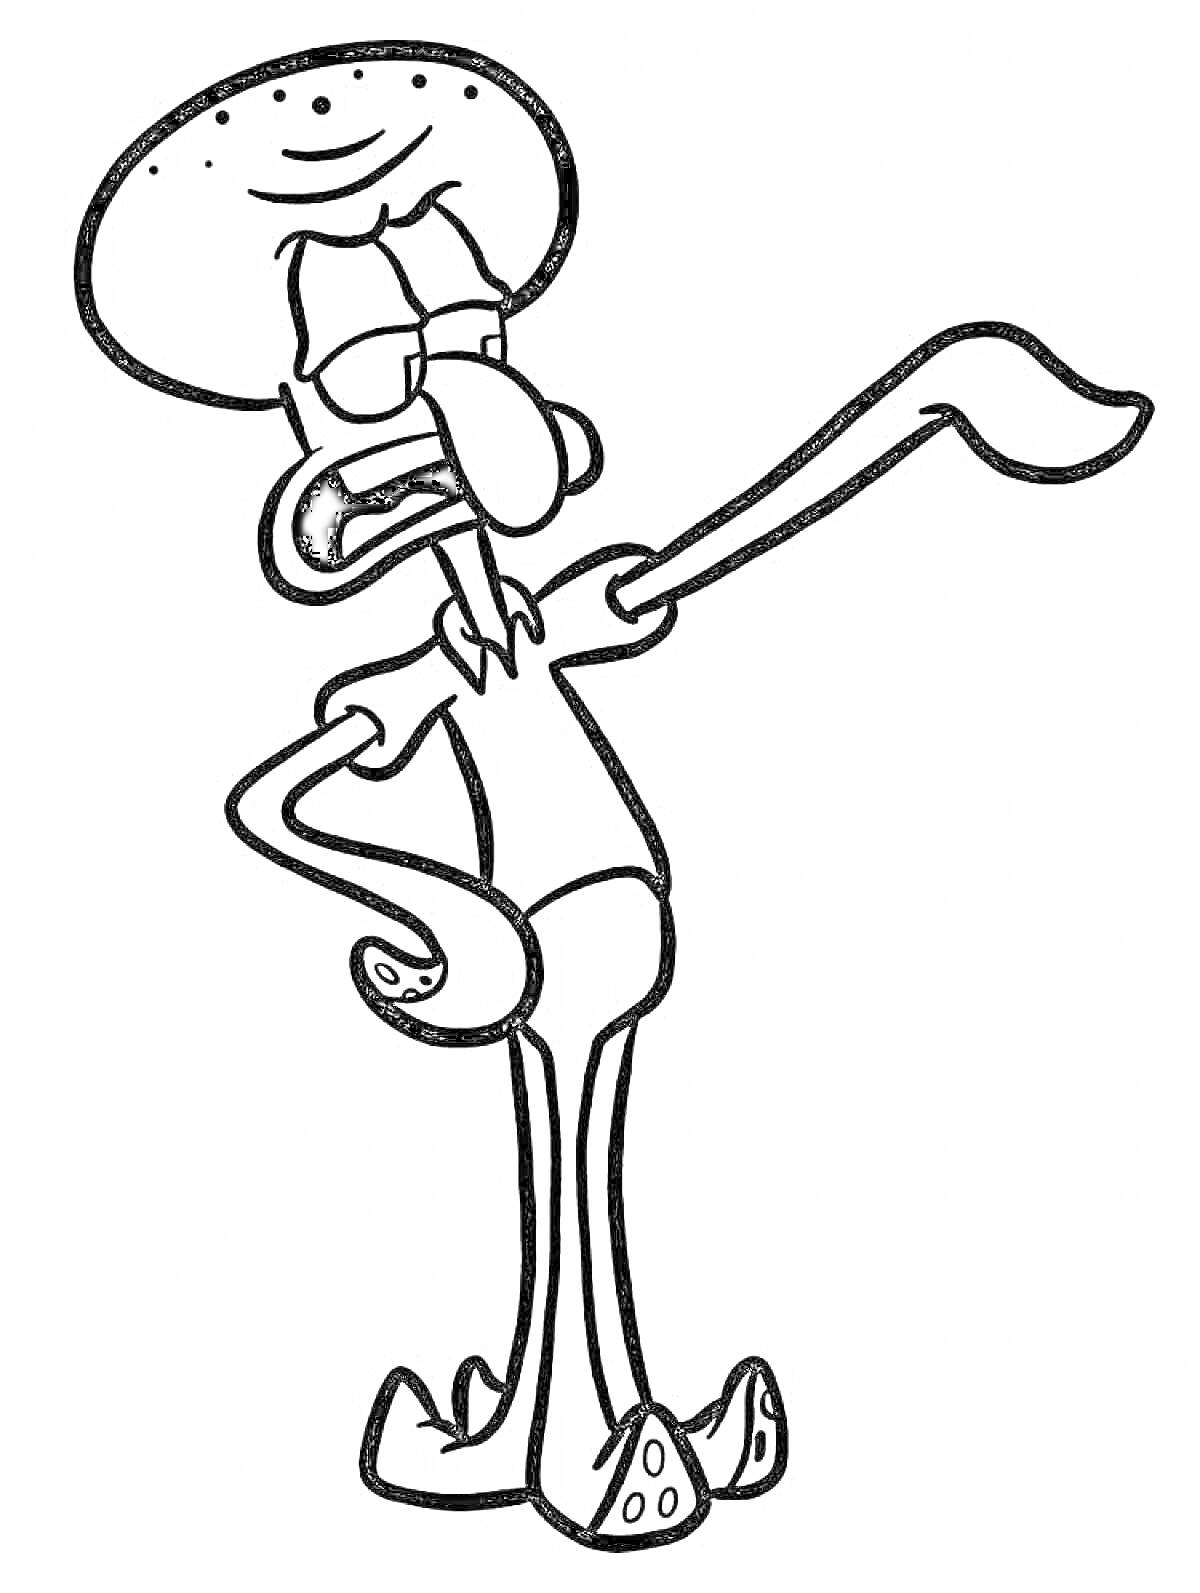 Раскраска Сквидвард с поднятой рукой, персонаж из мультфильма